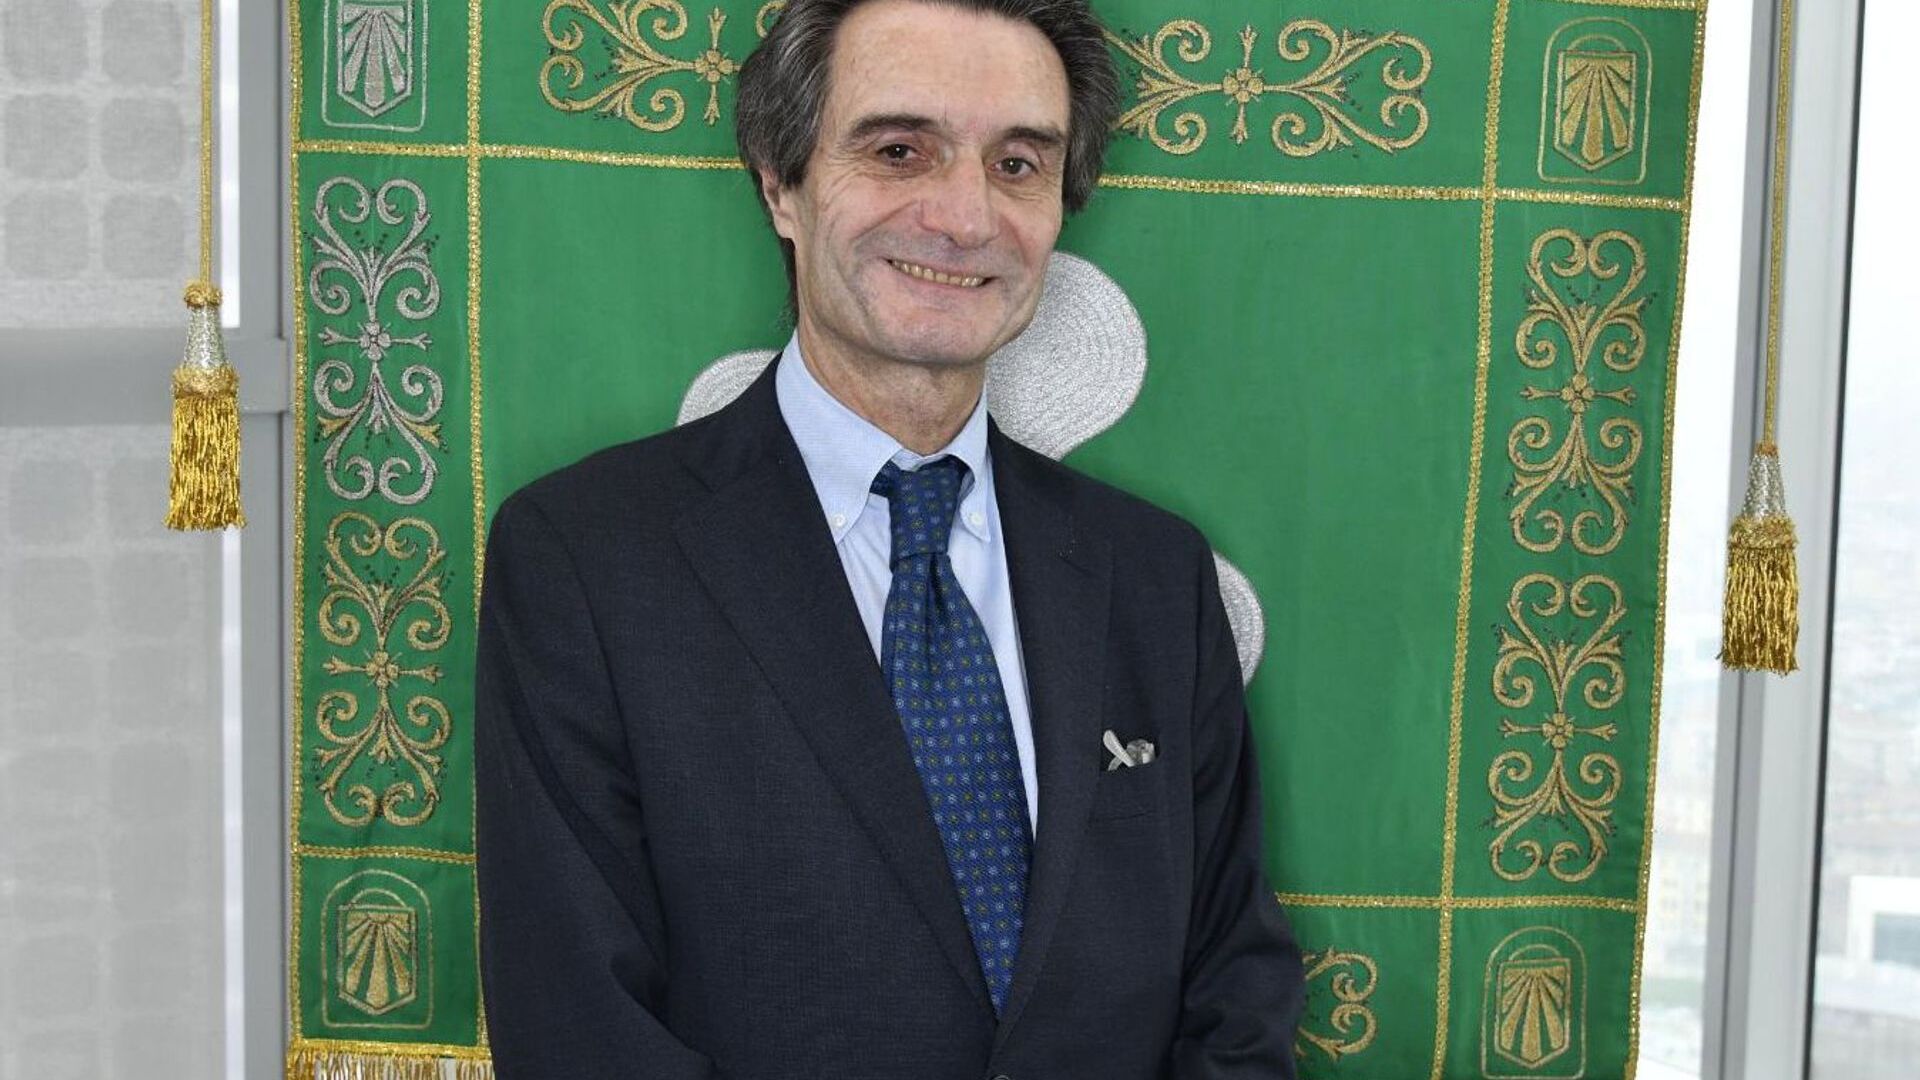 Attilio Fontana je predsjednik regije Lombardija